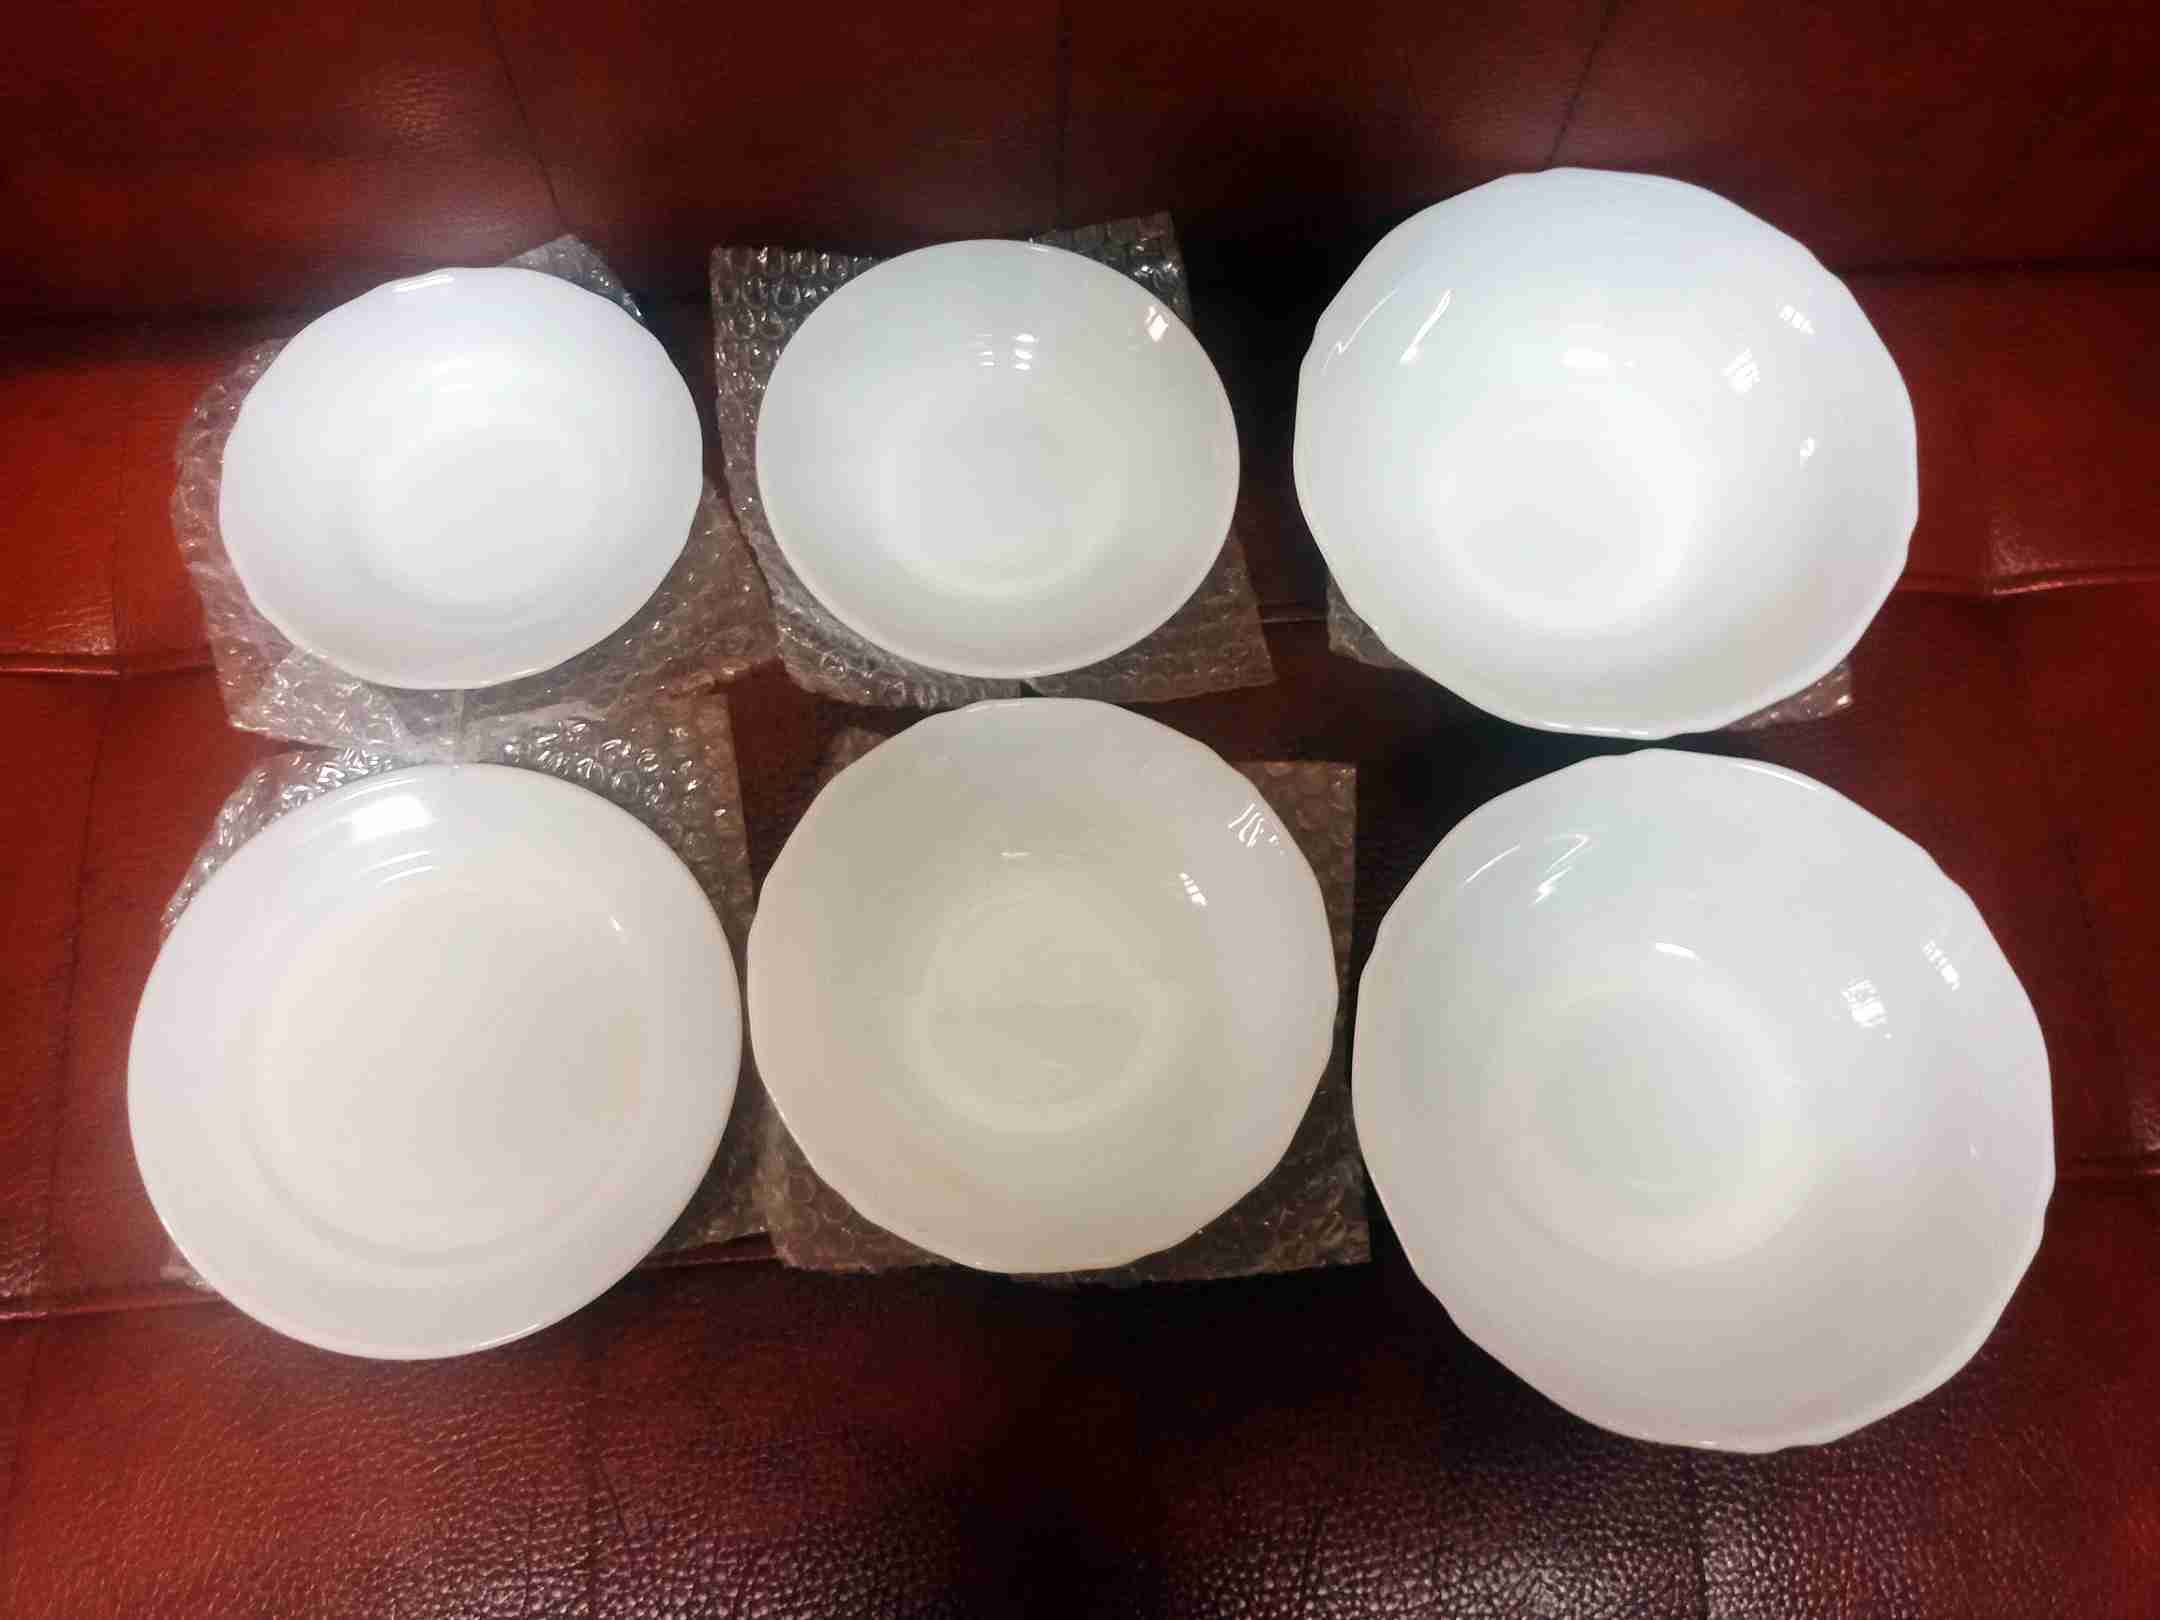 現貨全新免運特價 翡翠白玉瓷器碗盤組 碗公 碗盤 盤子 碗 湯碗 擺盤 精緻超美